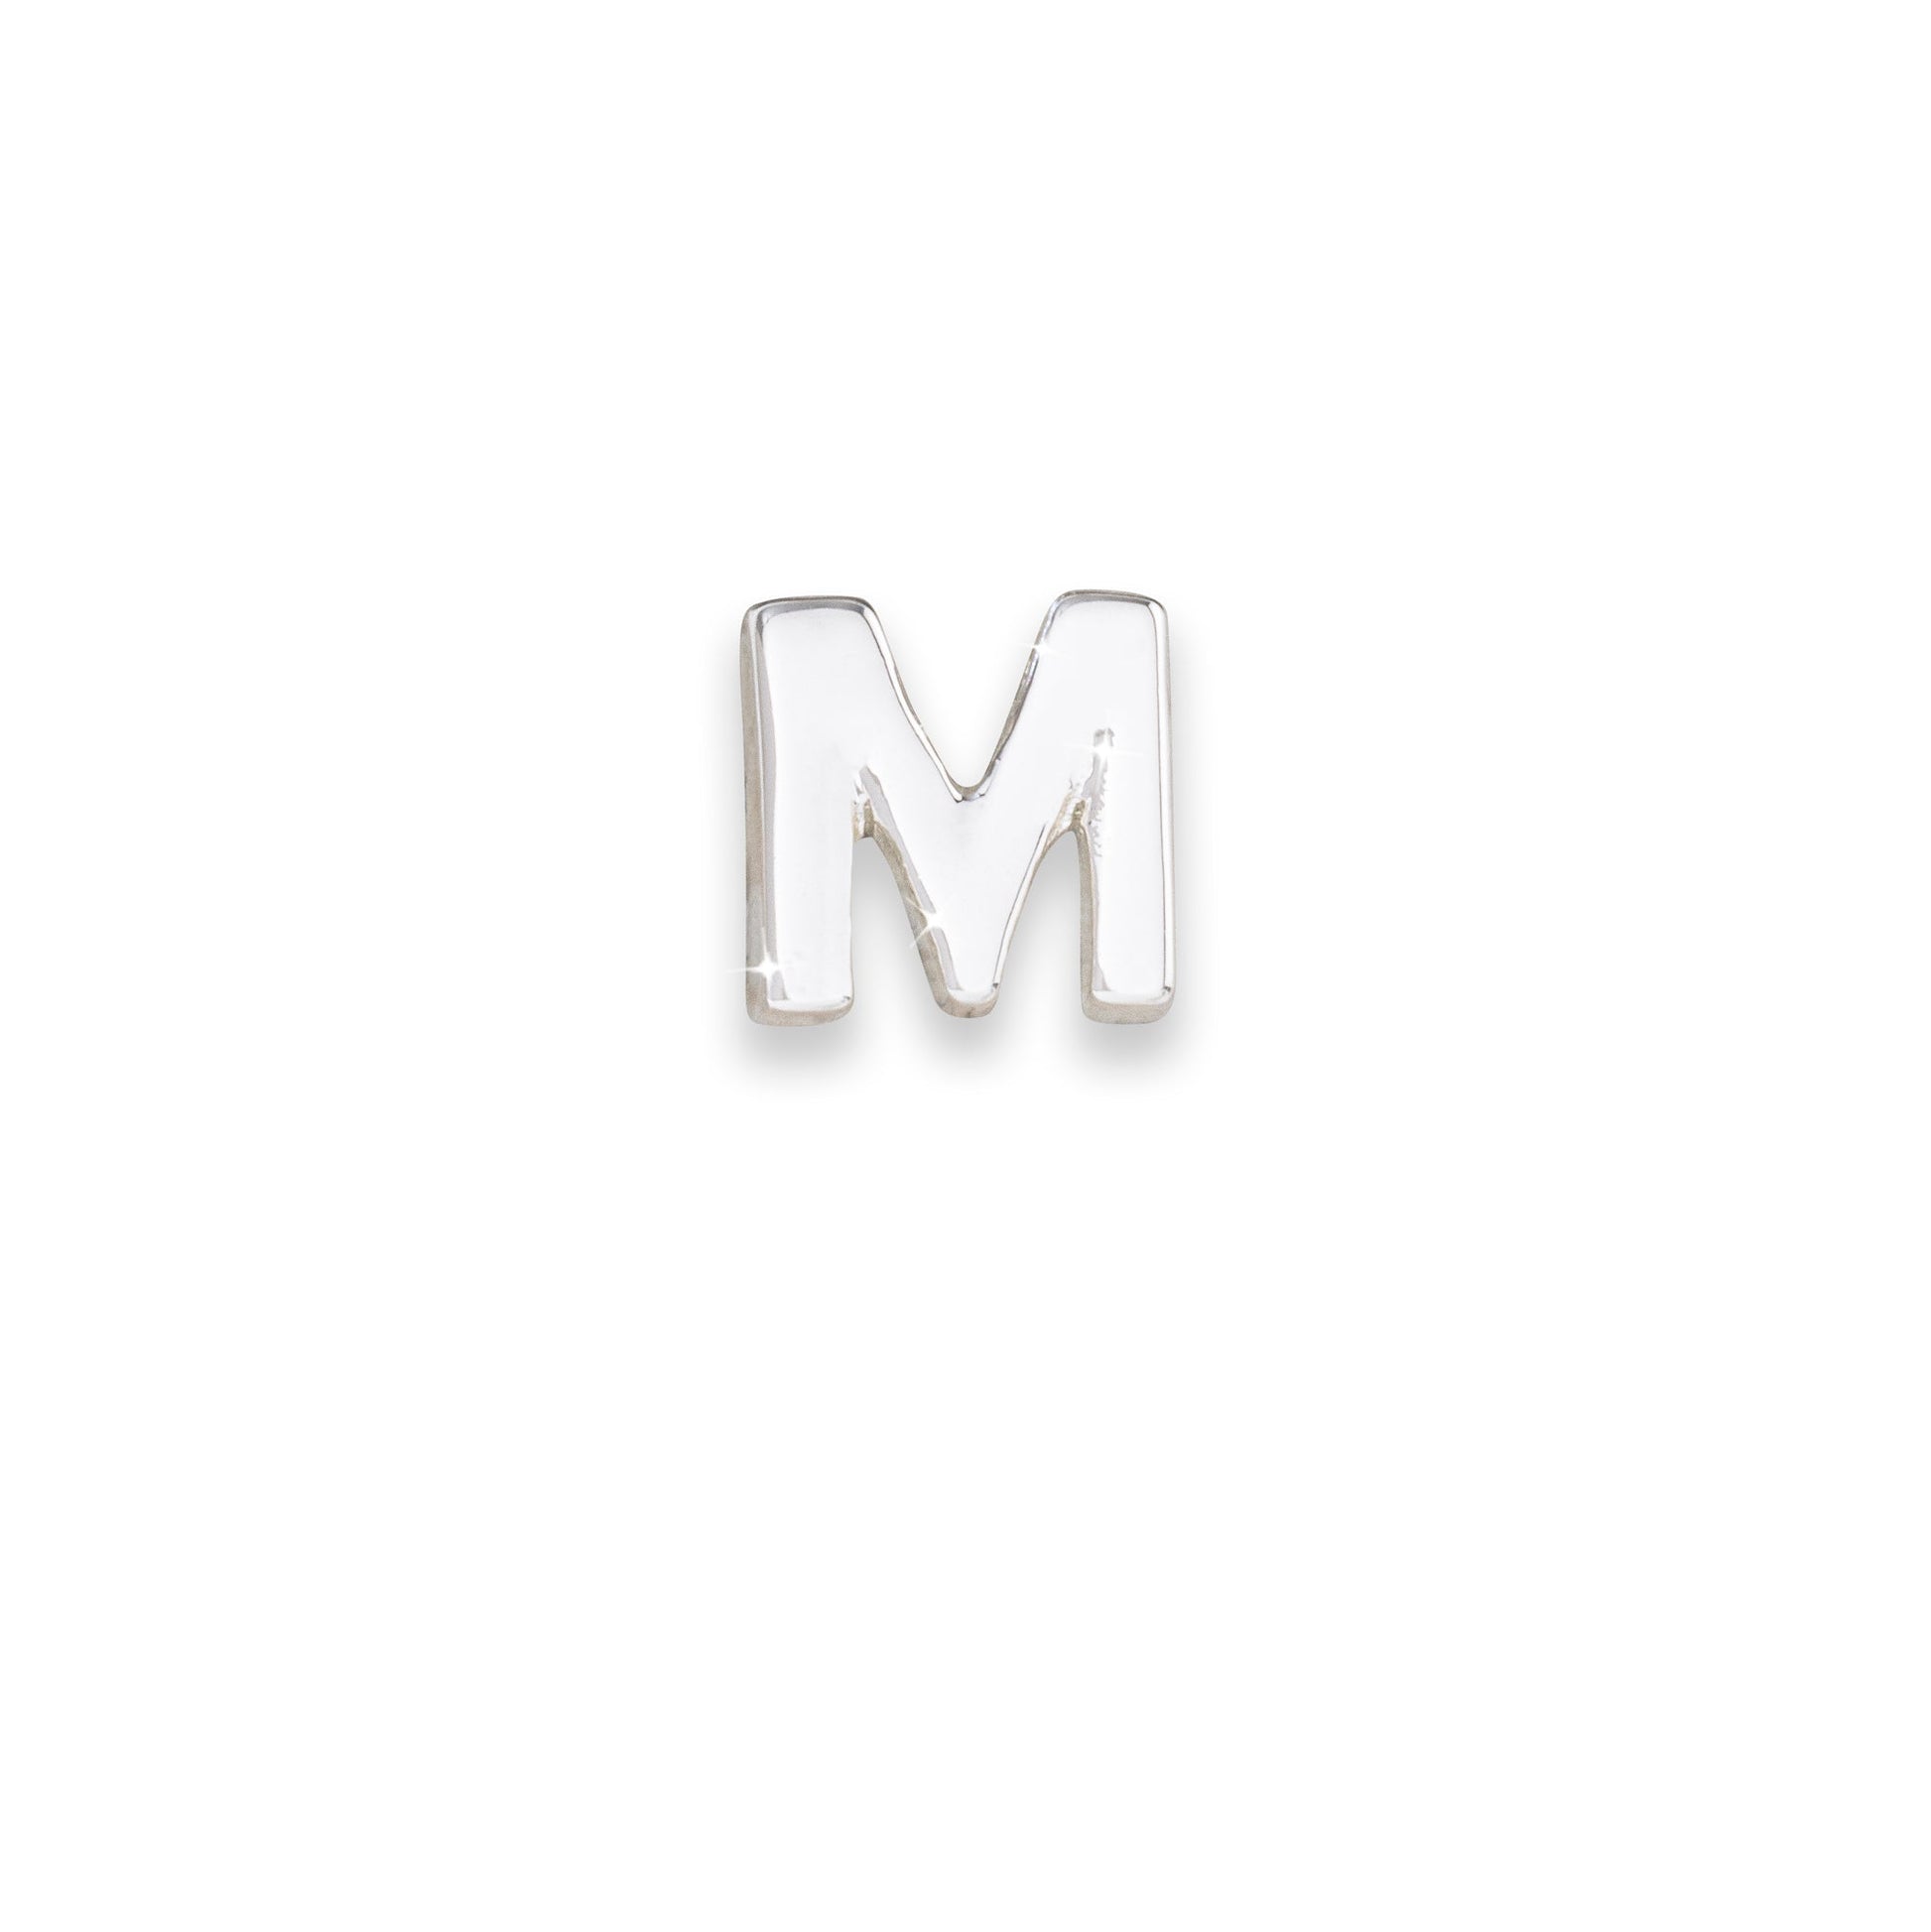 Silver letter M monogram charm for necklaces & bracelets